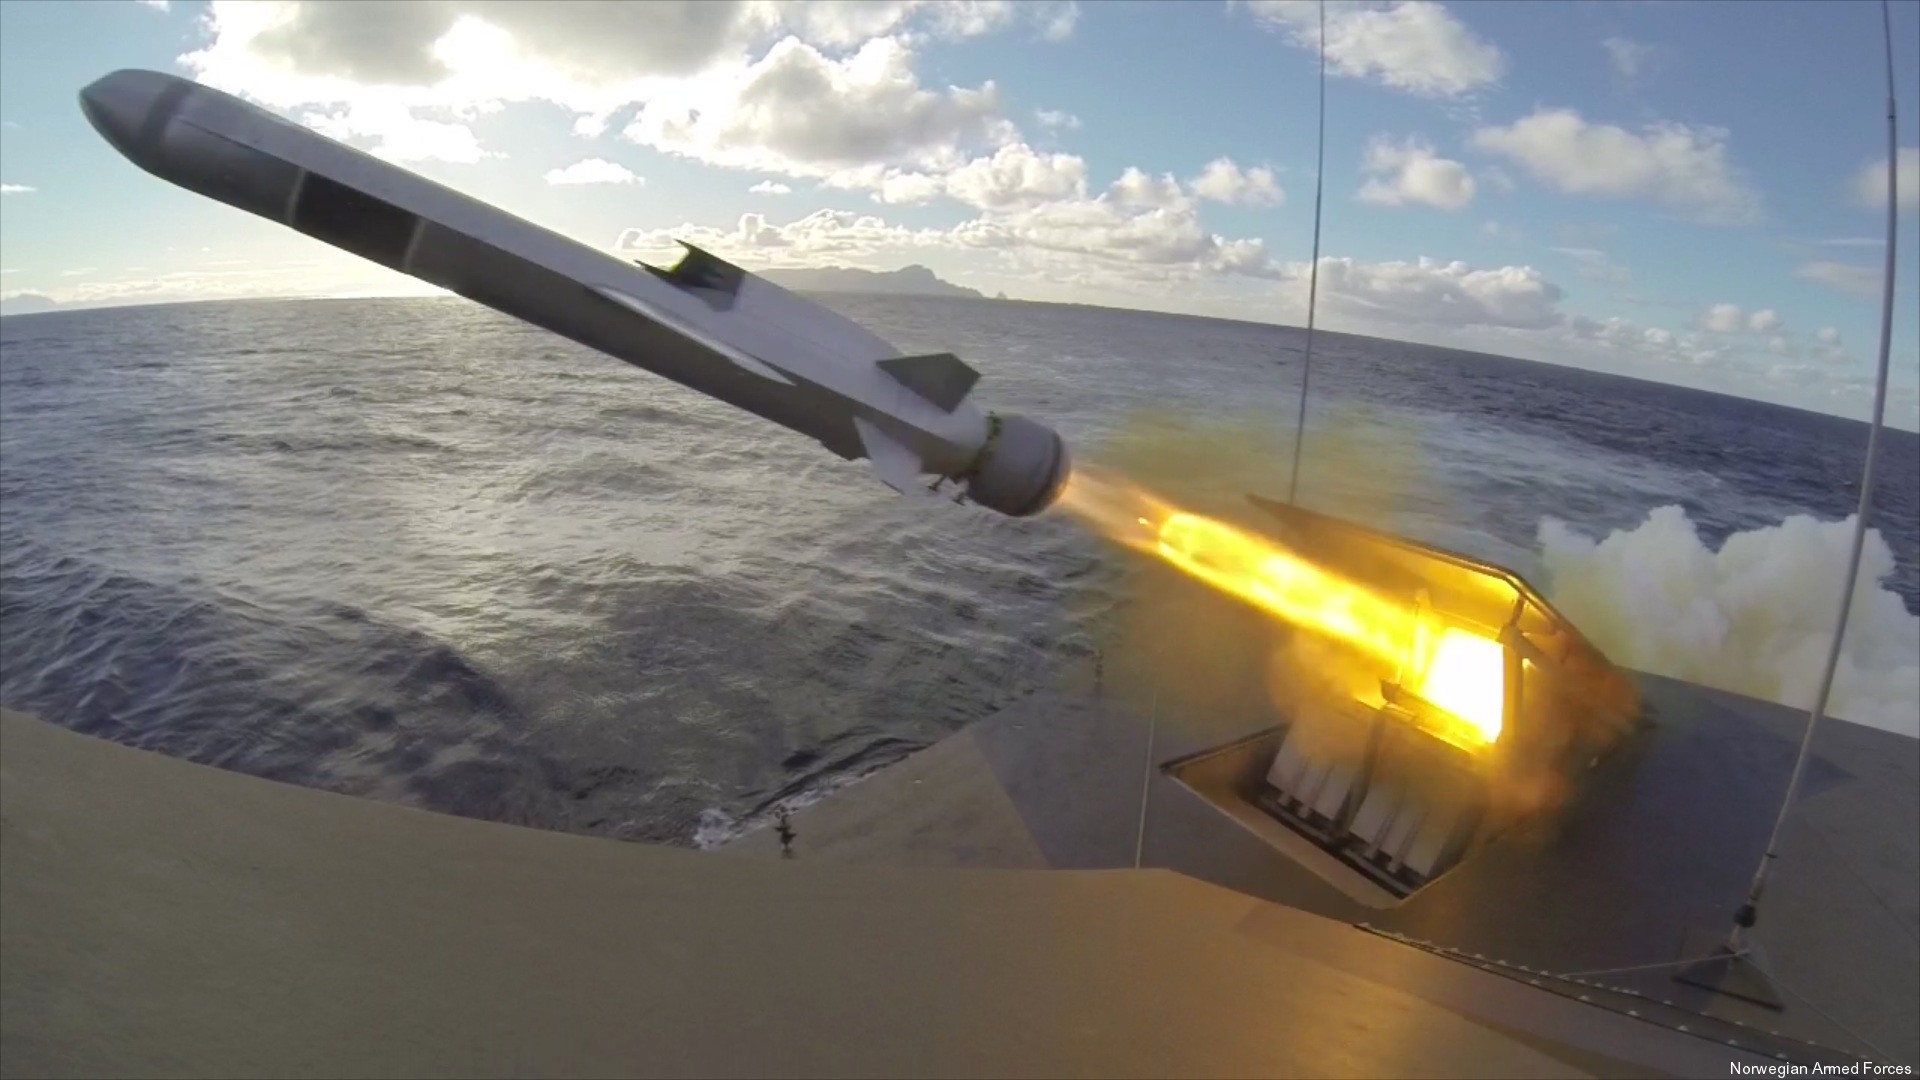 naval strike missile joint nsm jsm kongsberg defence systems kds raytheon norway 03 ssm land attack